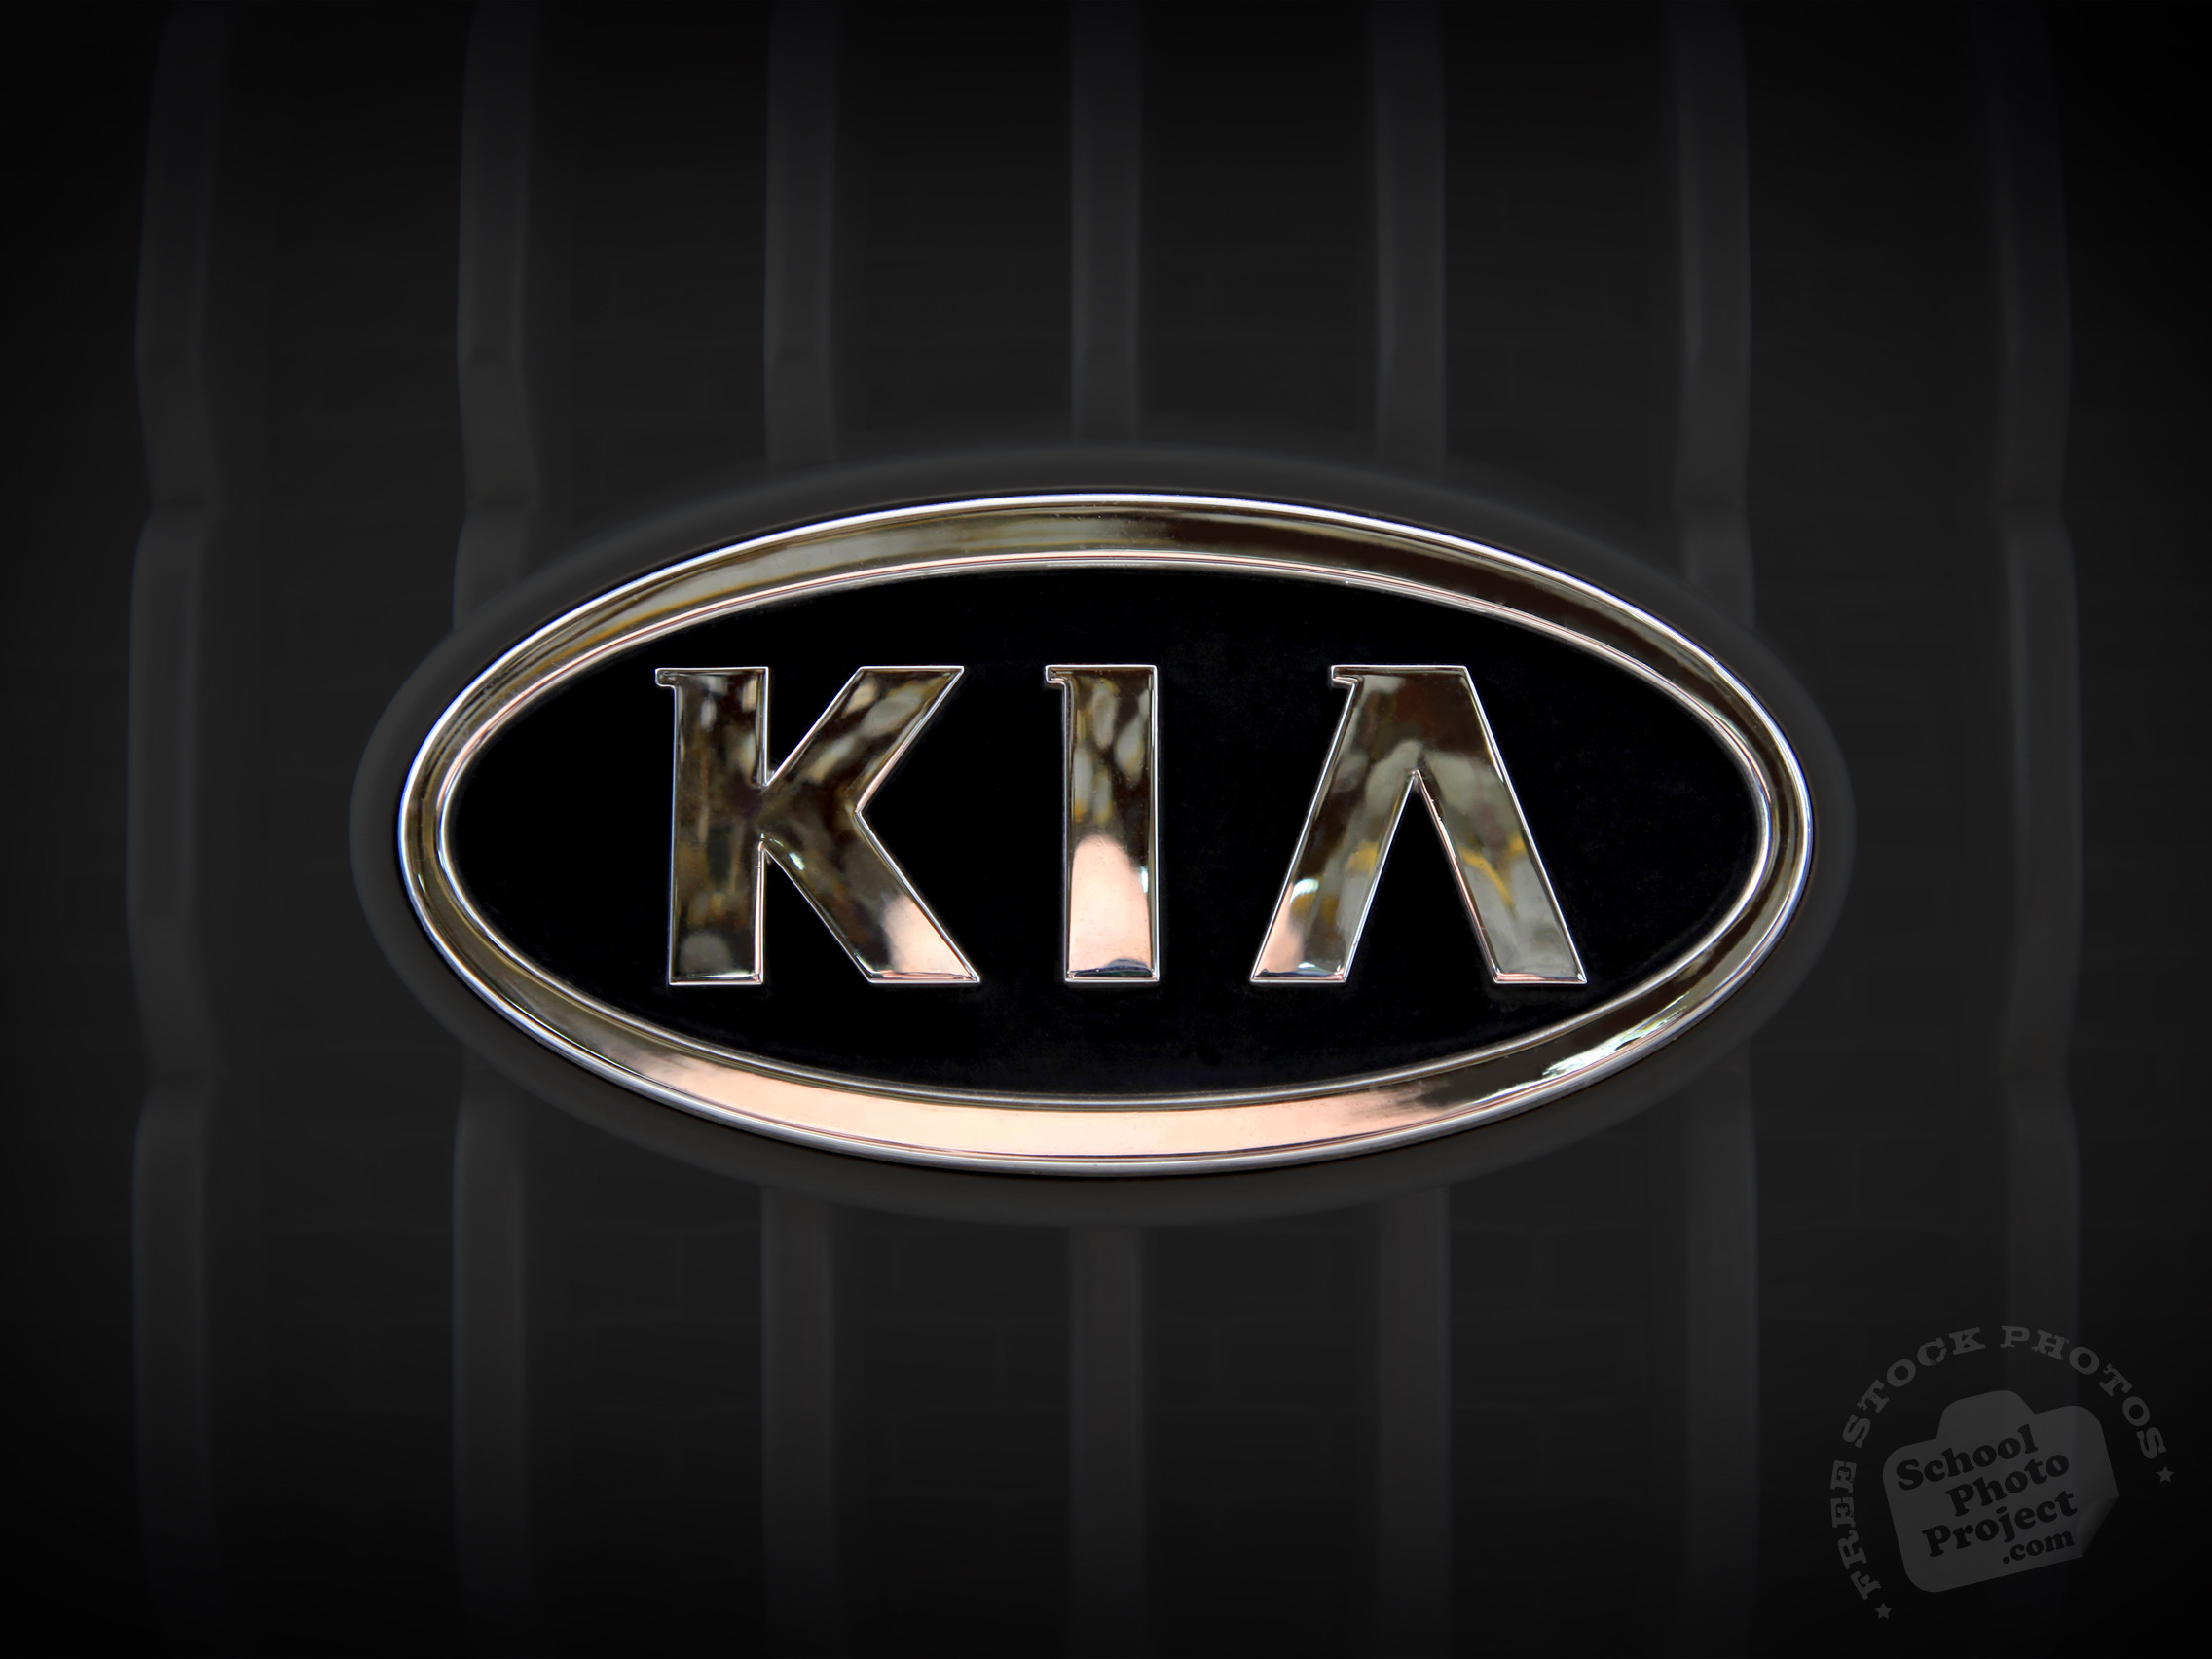 2272x1704 KIA logo, KIA brand, car logo, auto, automobile, free foto,